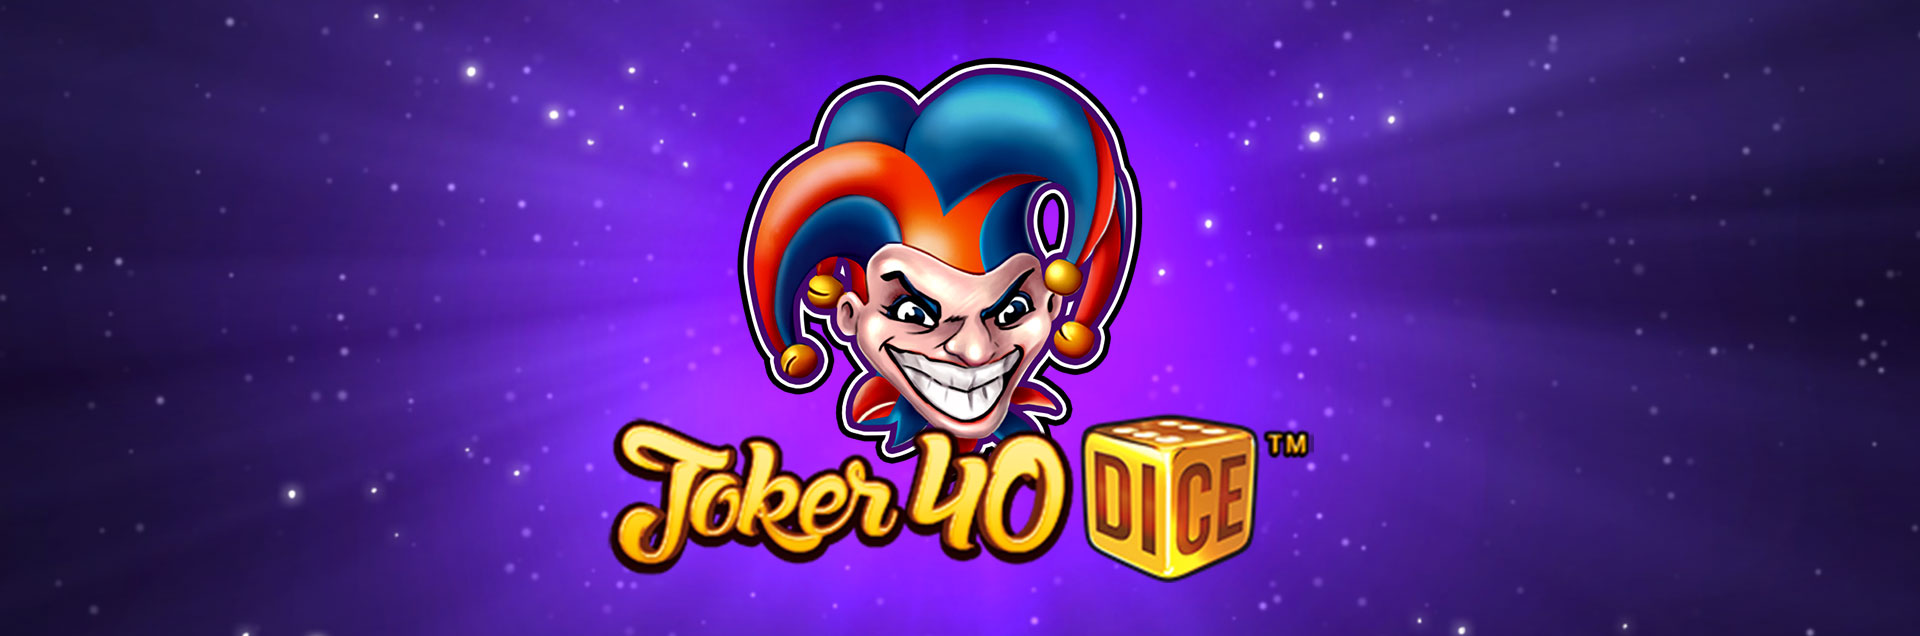 Joker 40 Dice header games